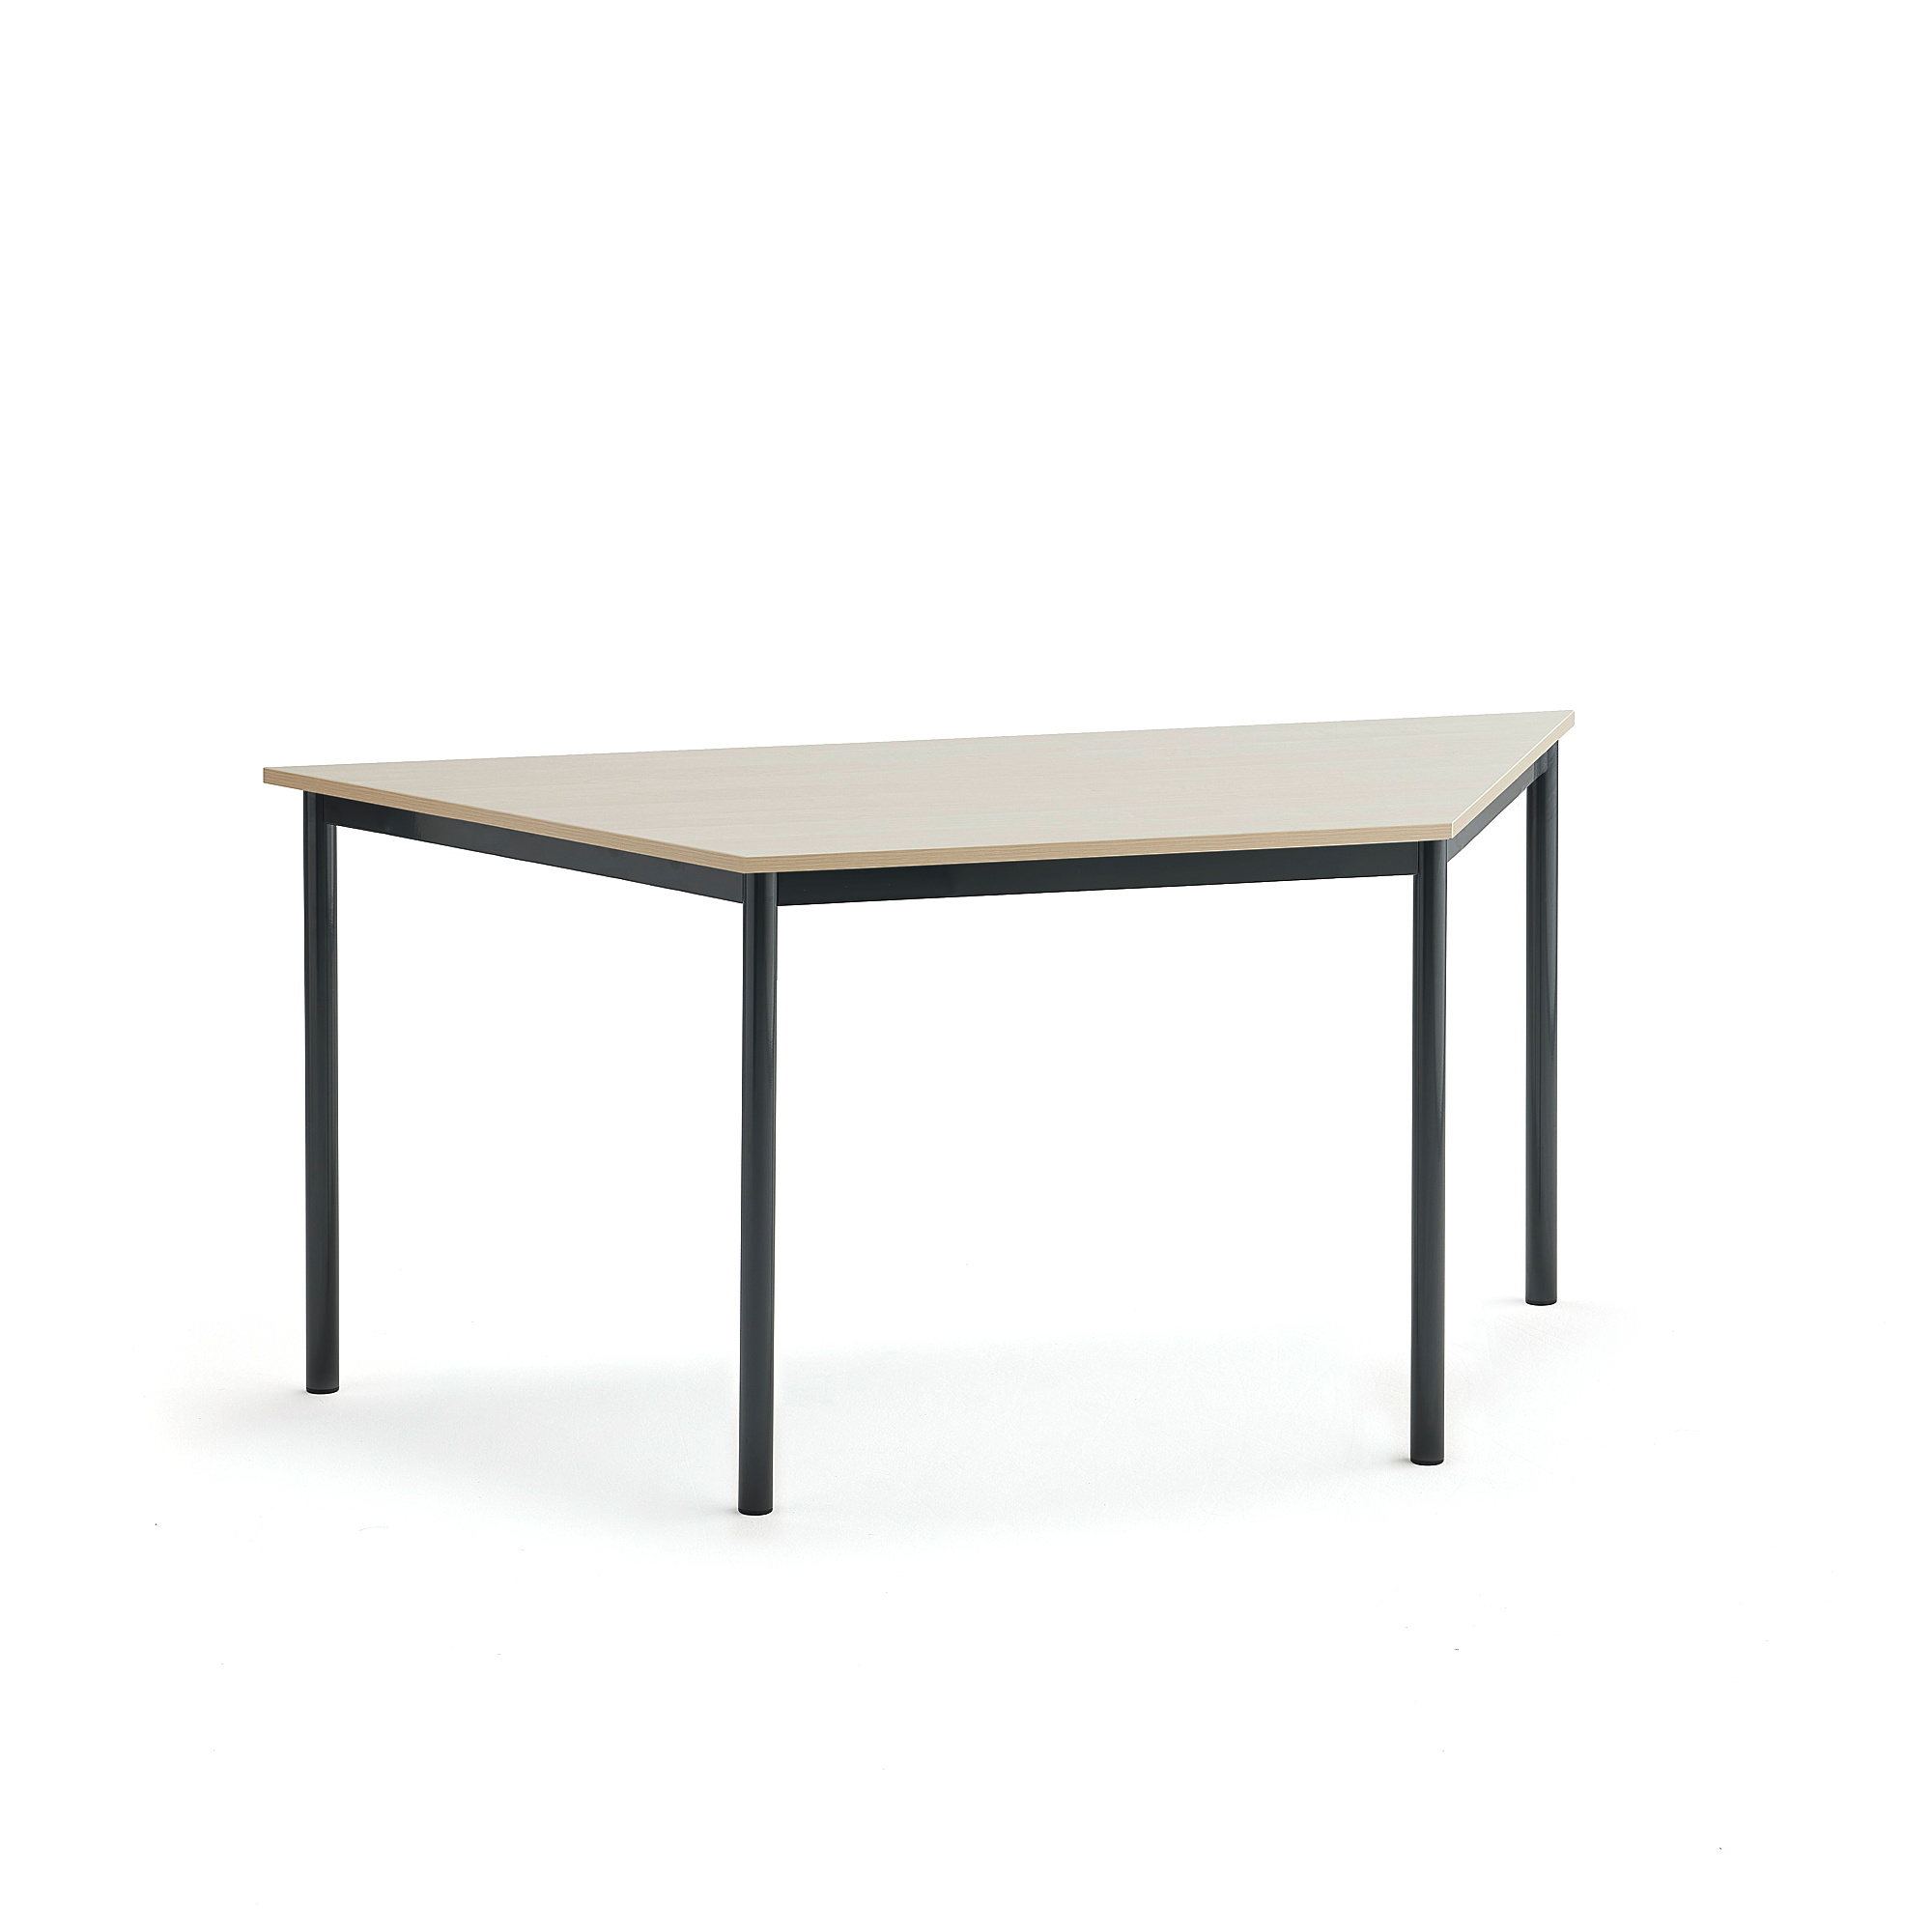 Stůl SONITUS TRAPETS, 1600x800x720 mm, antracitově šedé nohy, HPL deska tlumící hluk, bříza